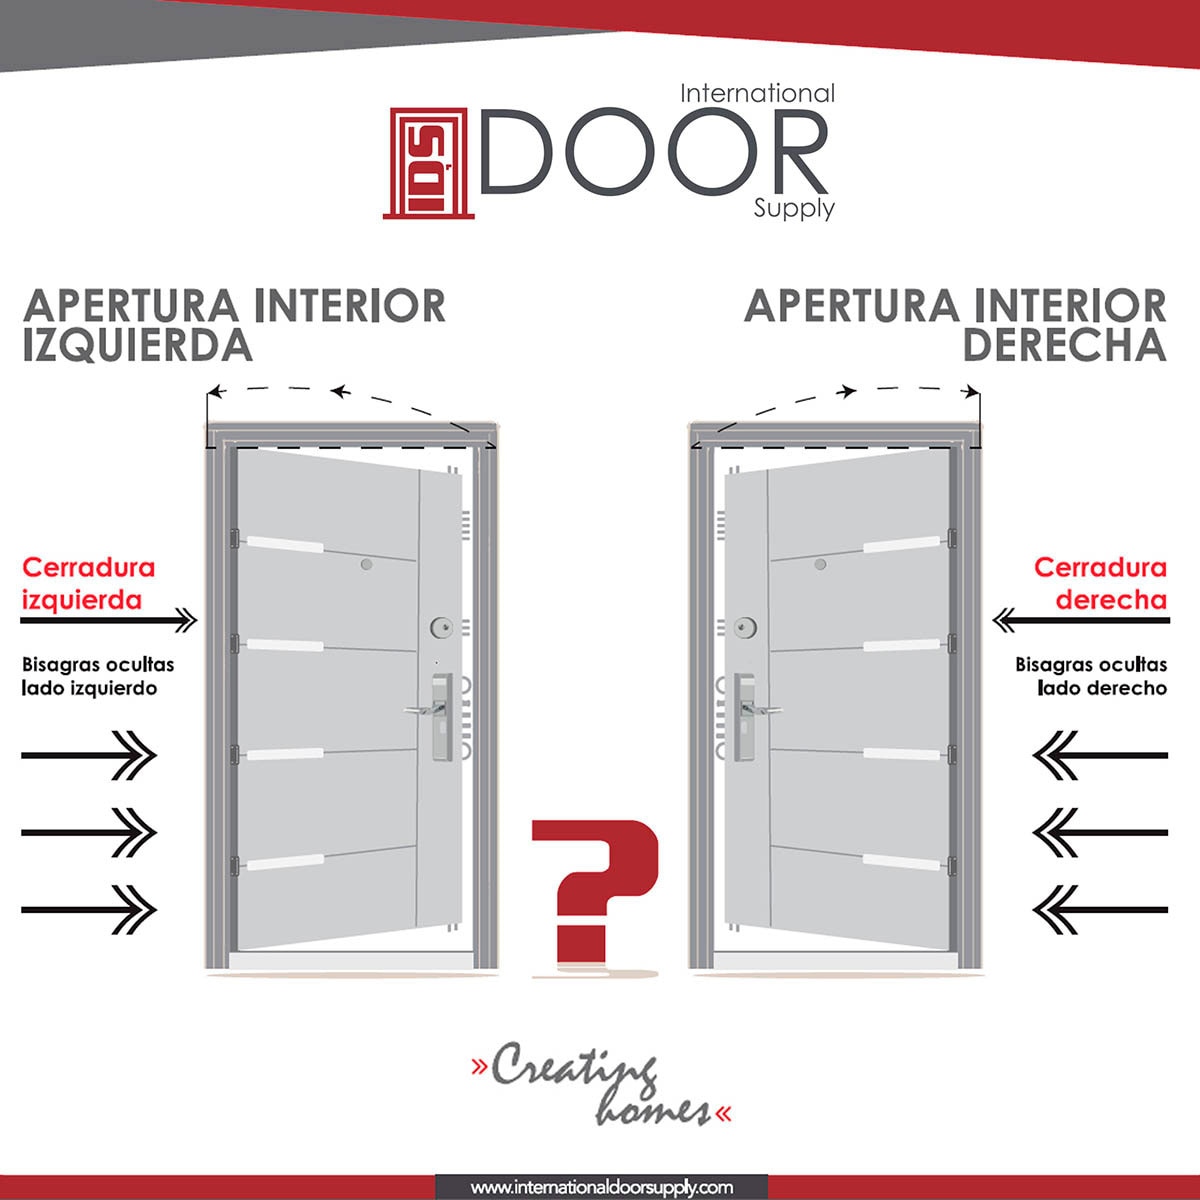 International Door Supply, Puerta de Alta Seguridad Santa Lucia Derecha